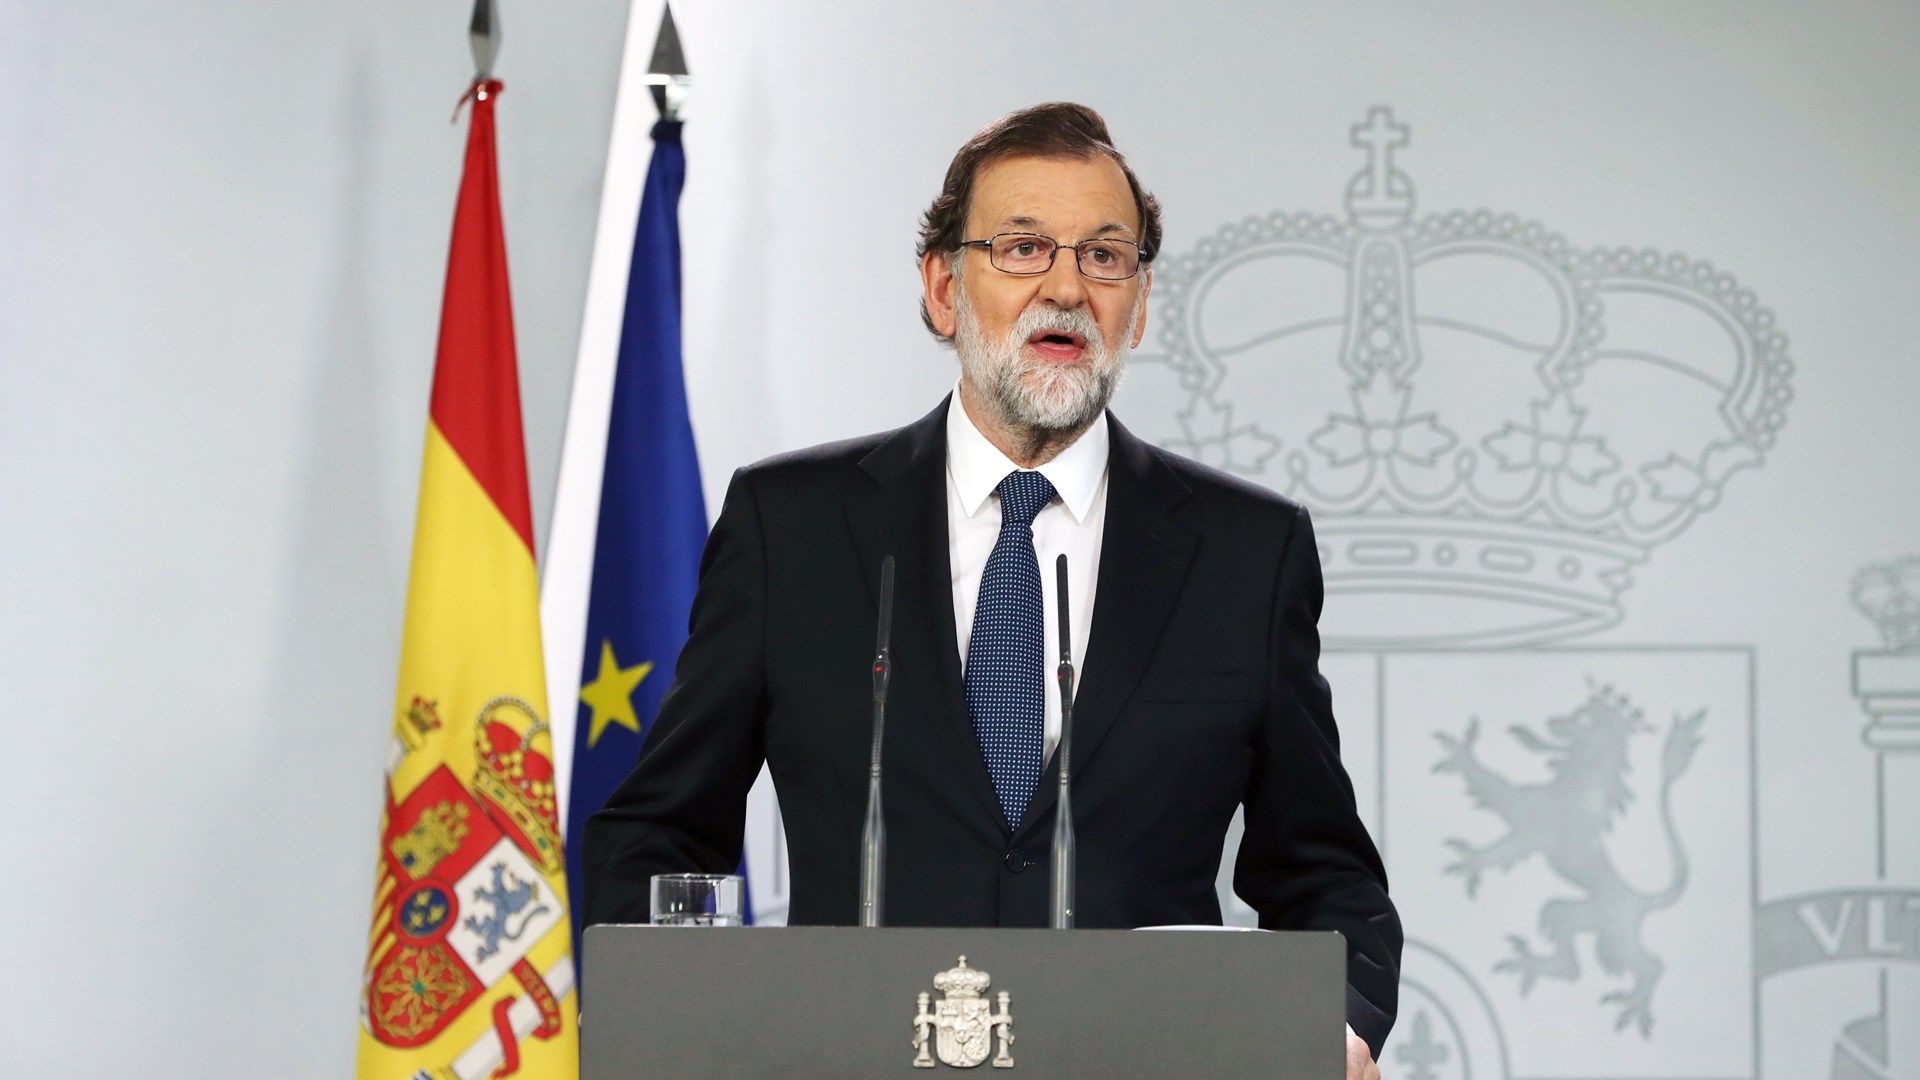 Η Μαδρίτη αναθεωρεί την πρόβλεψή της για την ανάπτυξη το 2018 λόγω της καταλανικής κρίσης